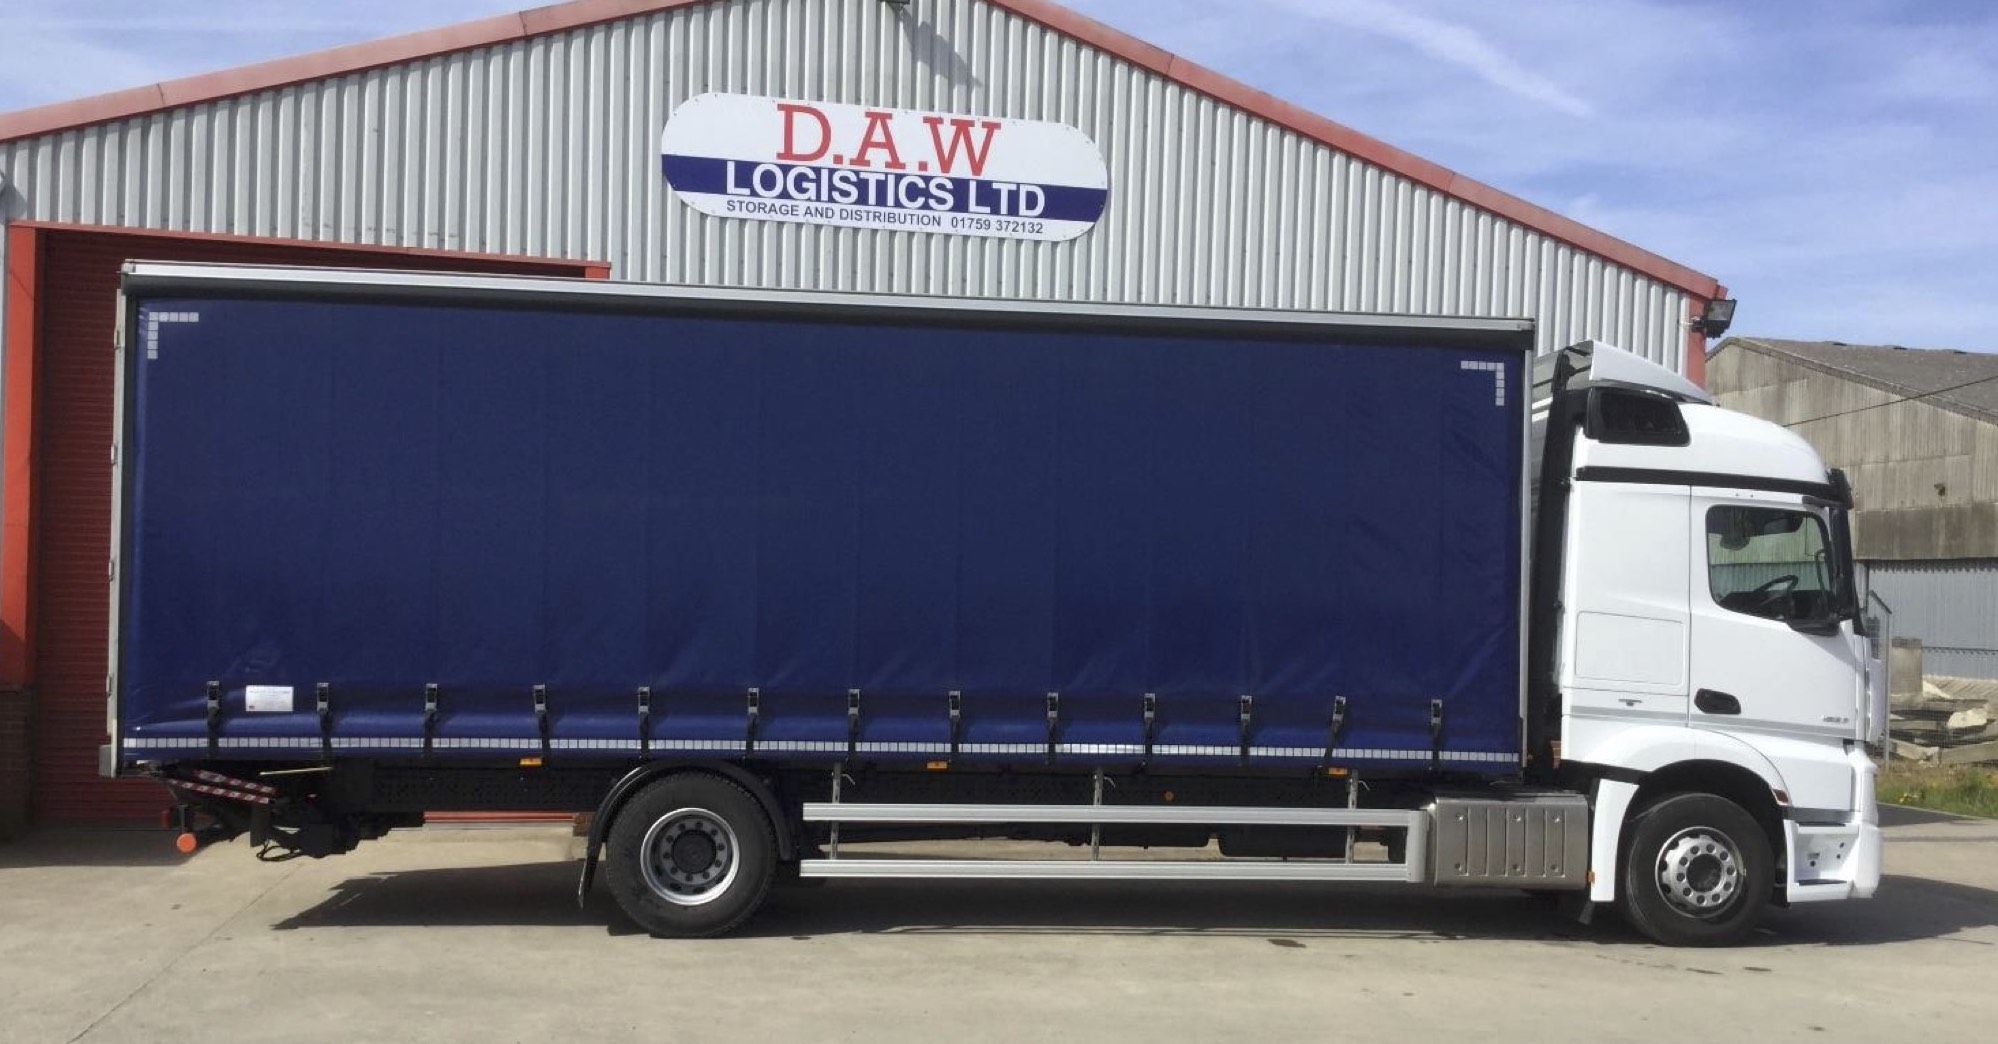 DAW Logistics Ltd